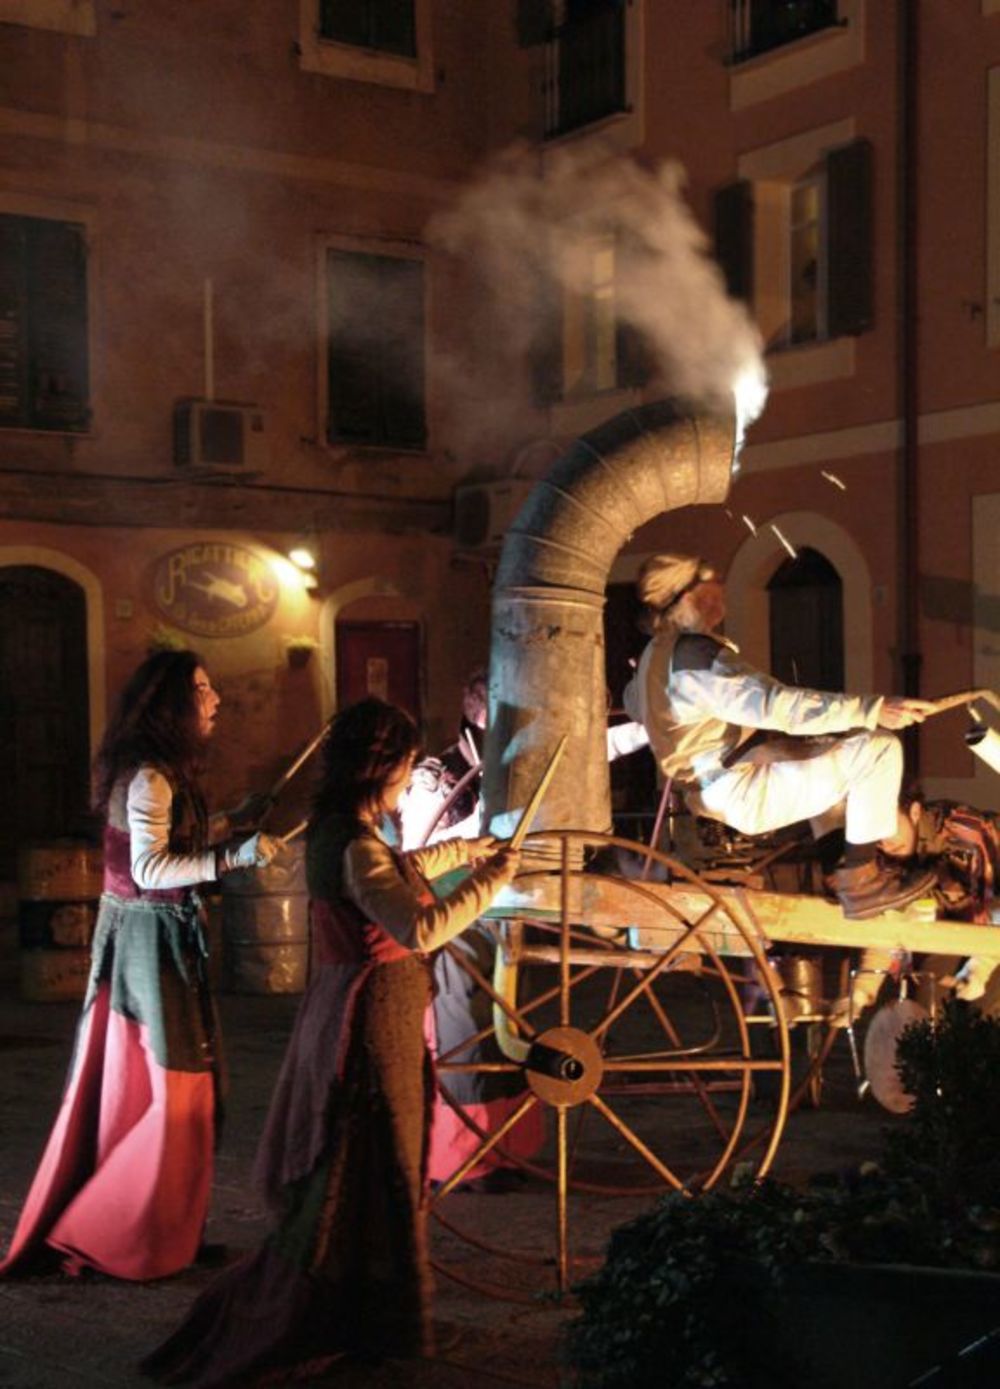 Tokom Tvrđava teatra koji se od 11. do 20 avgusta održava u Smederevu, gosti iz inostranstva izvešće nekoliko spektakularnih predstava